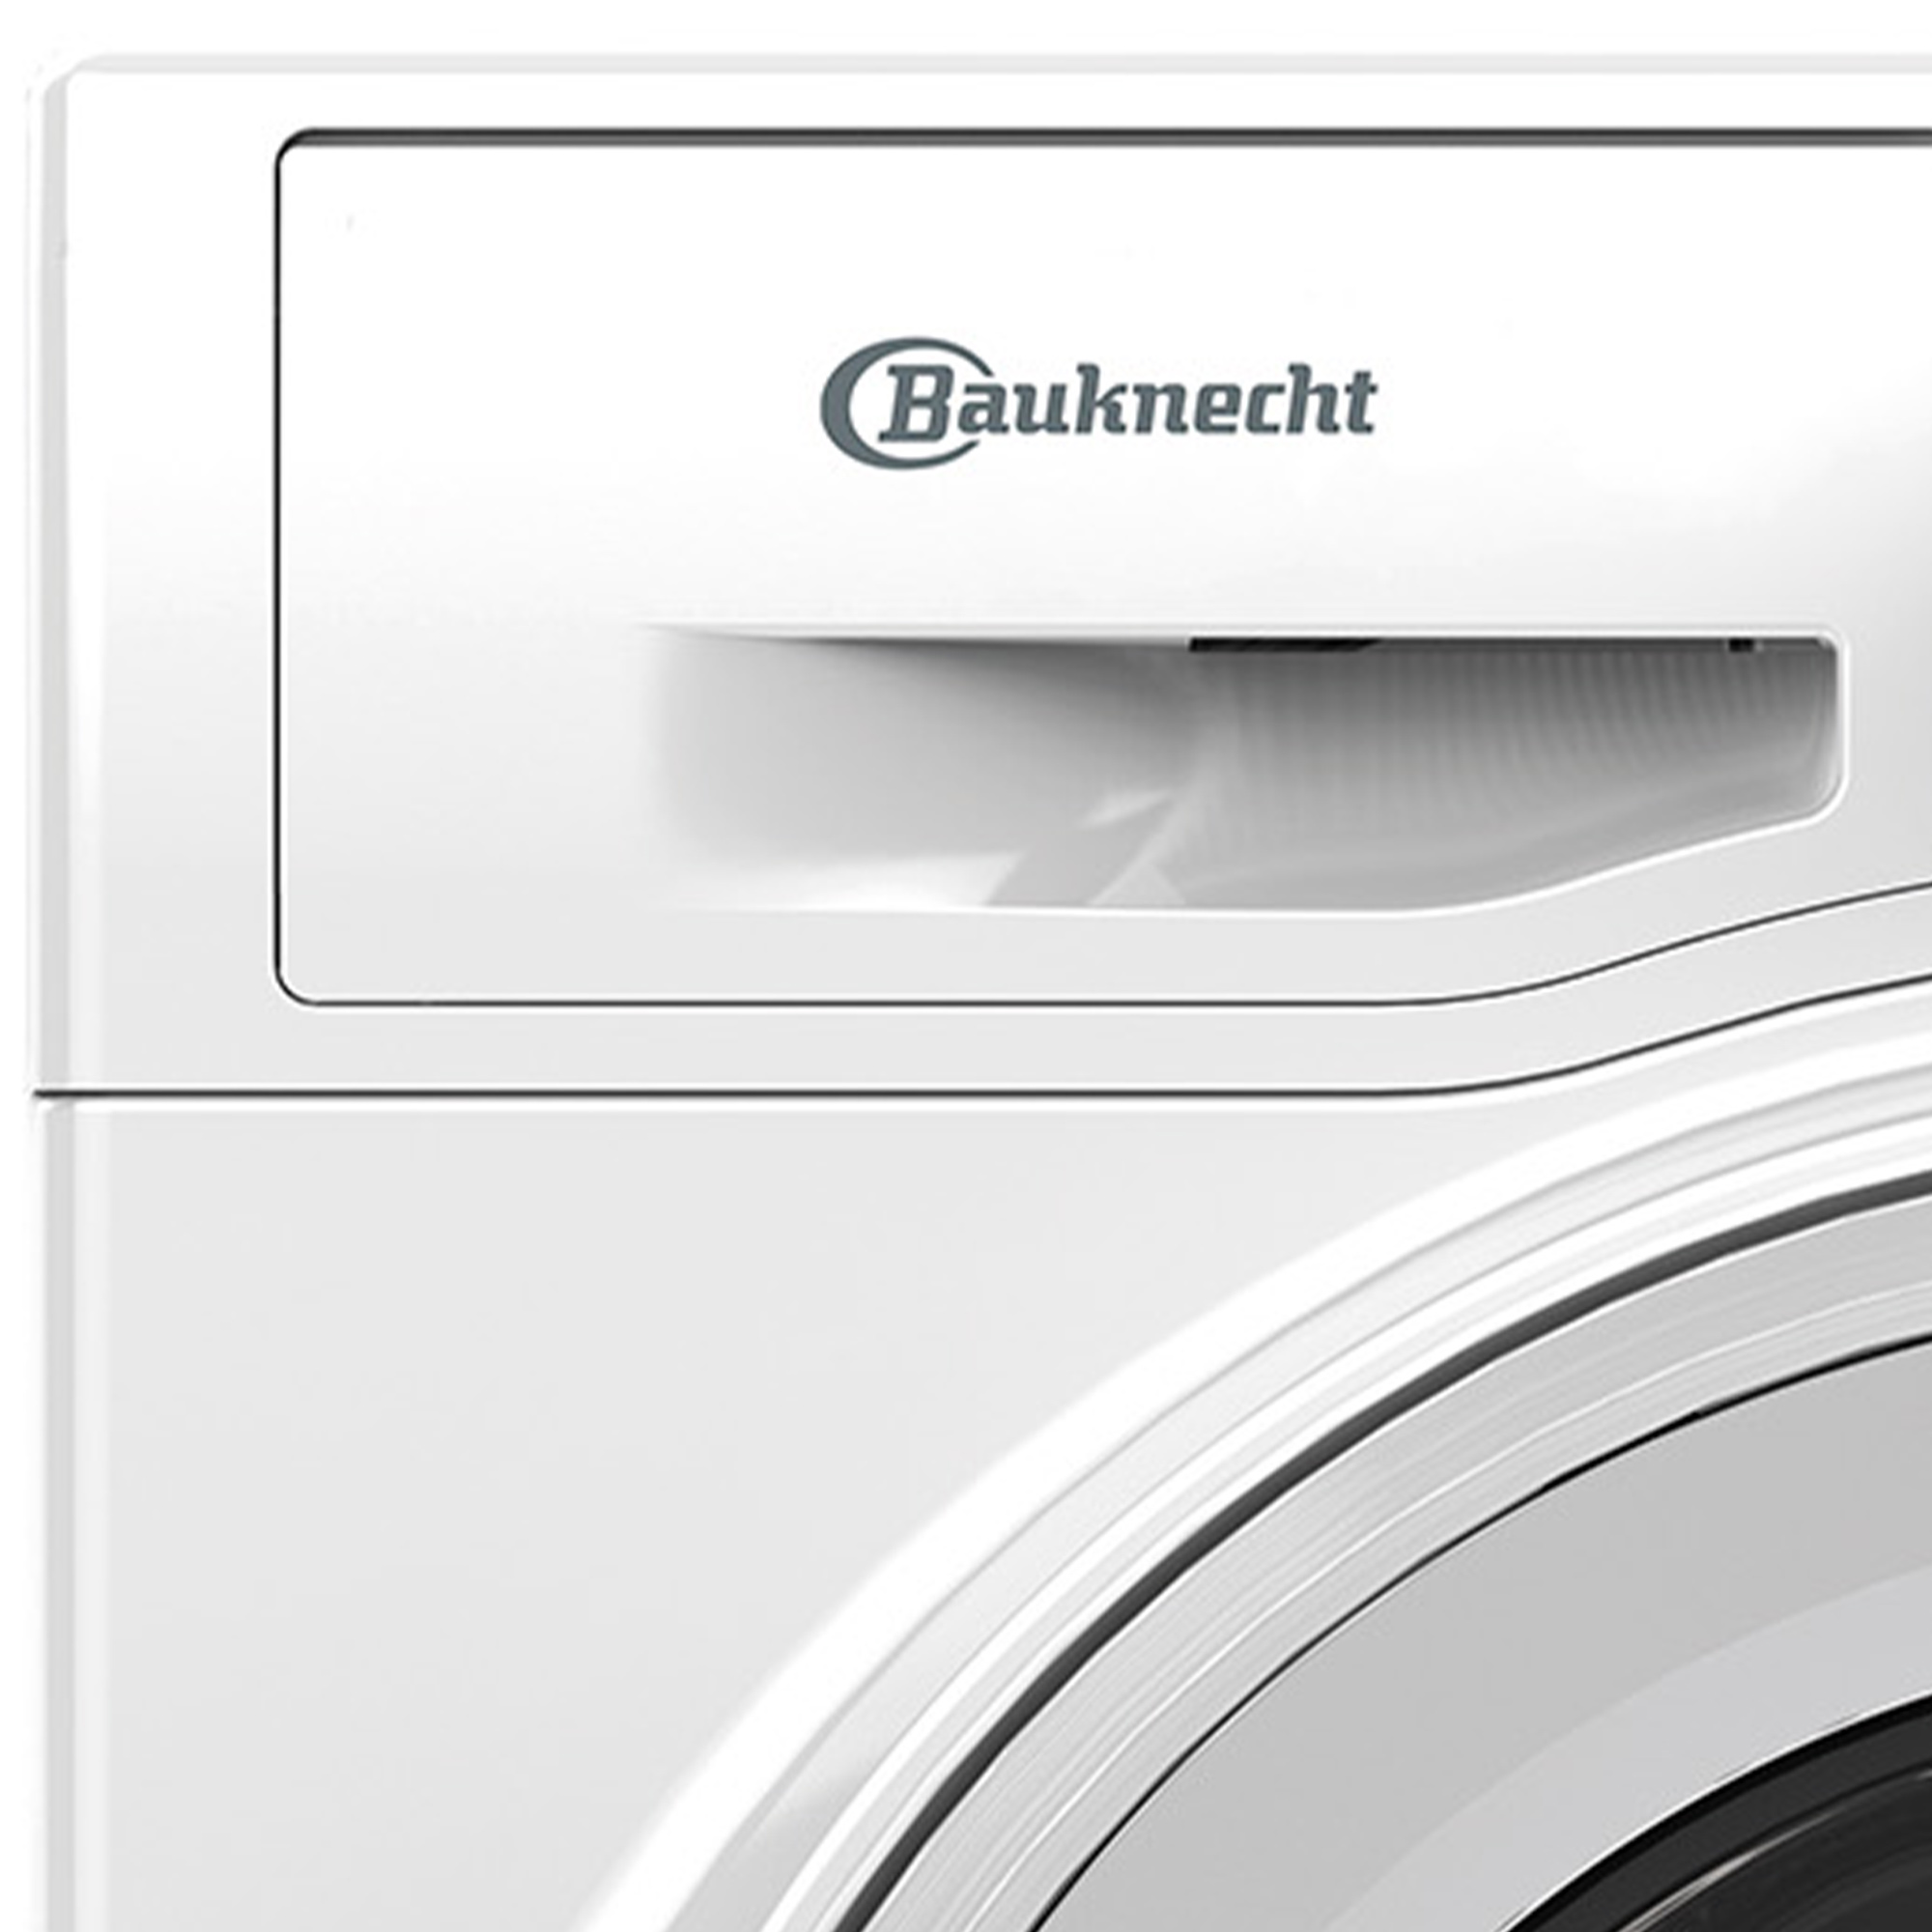 kg, C BAUKNECHT 719 C) BW (7 Waschmaschine